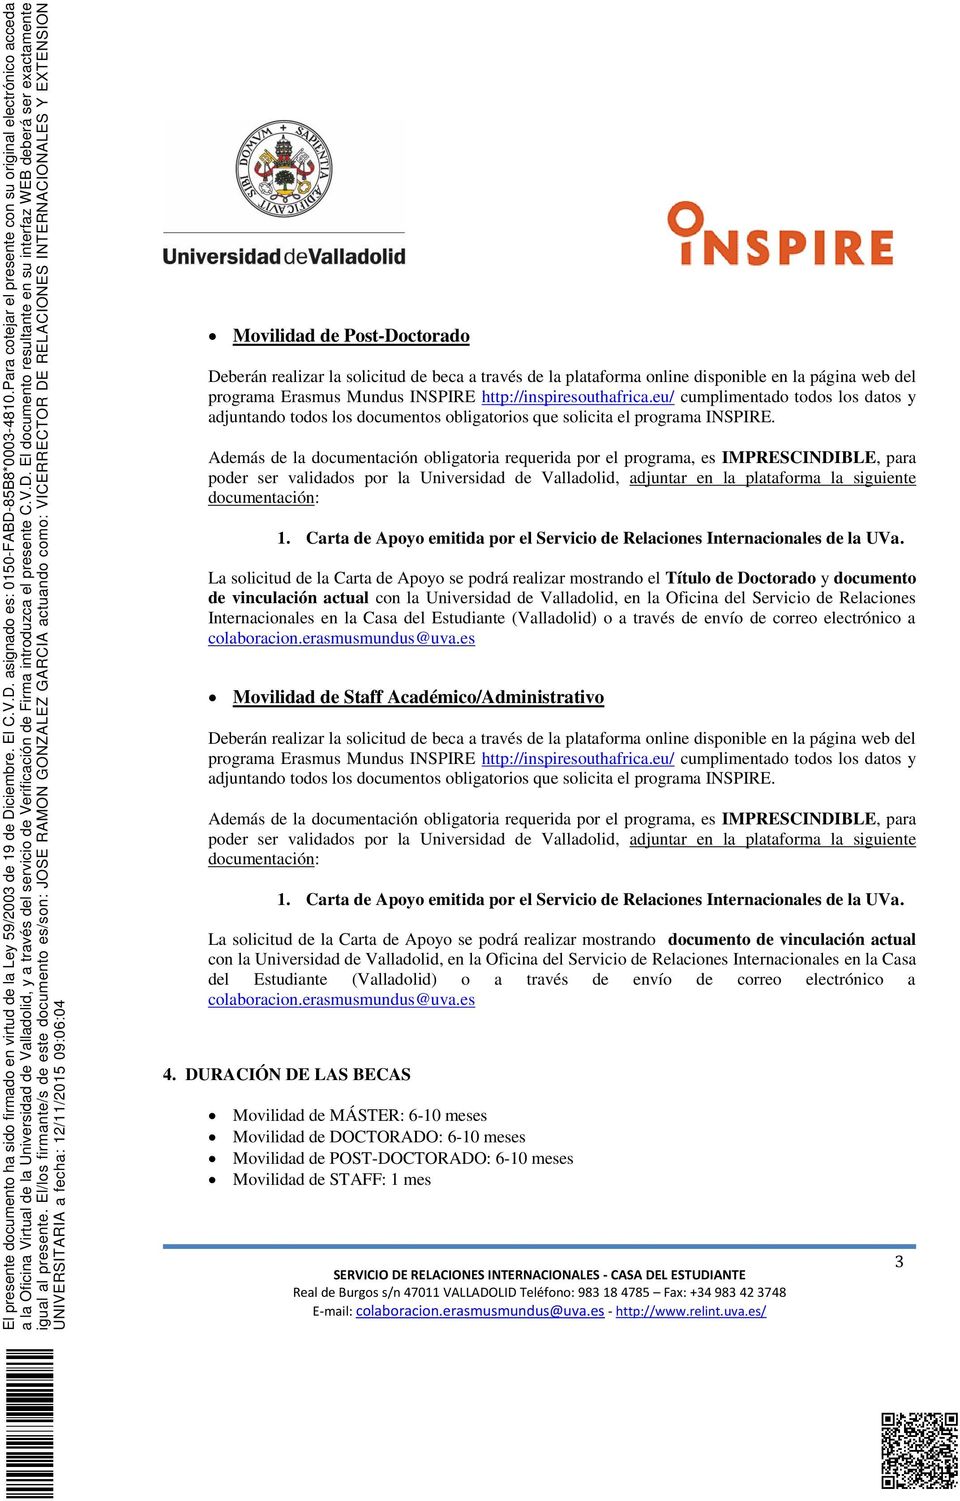 Internacionales en la Casa del Estudiante (Valladolid) o a través de envío de correo electrónico a Movilidad de Staff Académico/Administrativo 1.